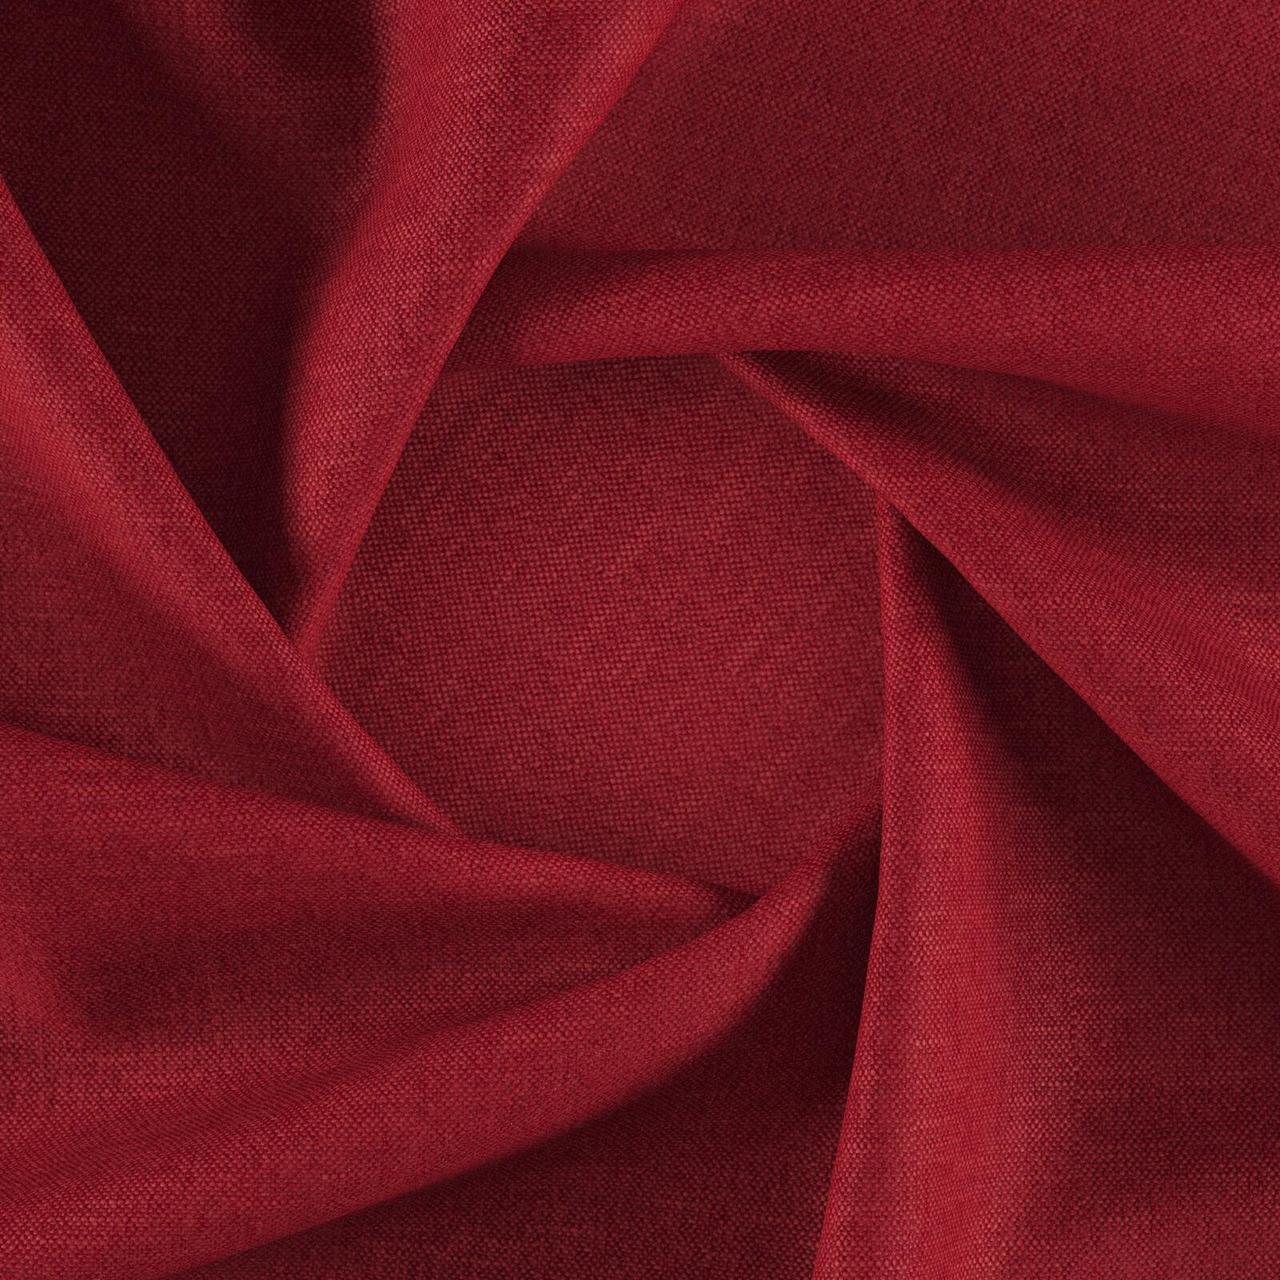 Тканина для перетяжки м'яких меблів шеніл Перфекто (Perfecto) вишневого кольору